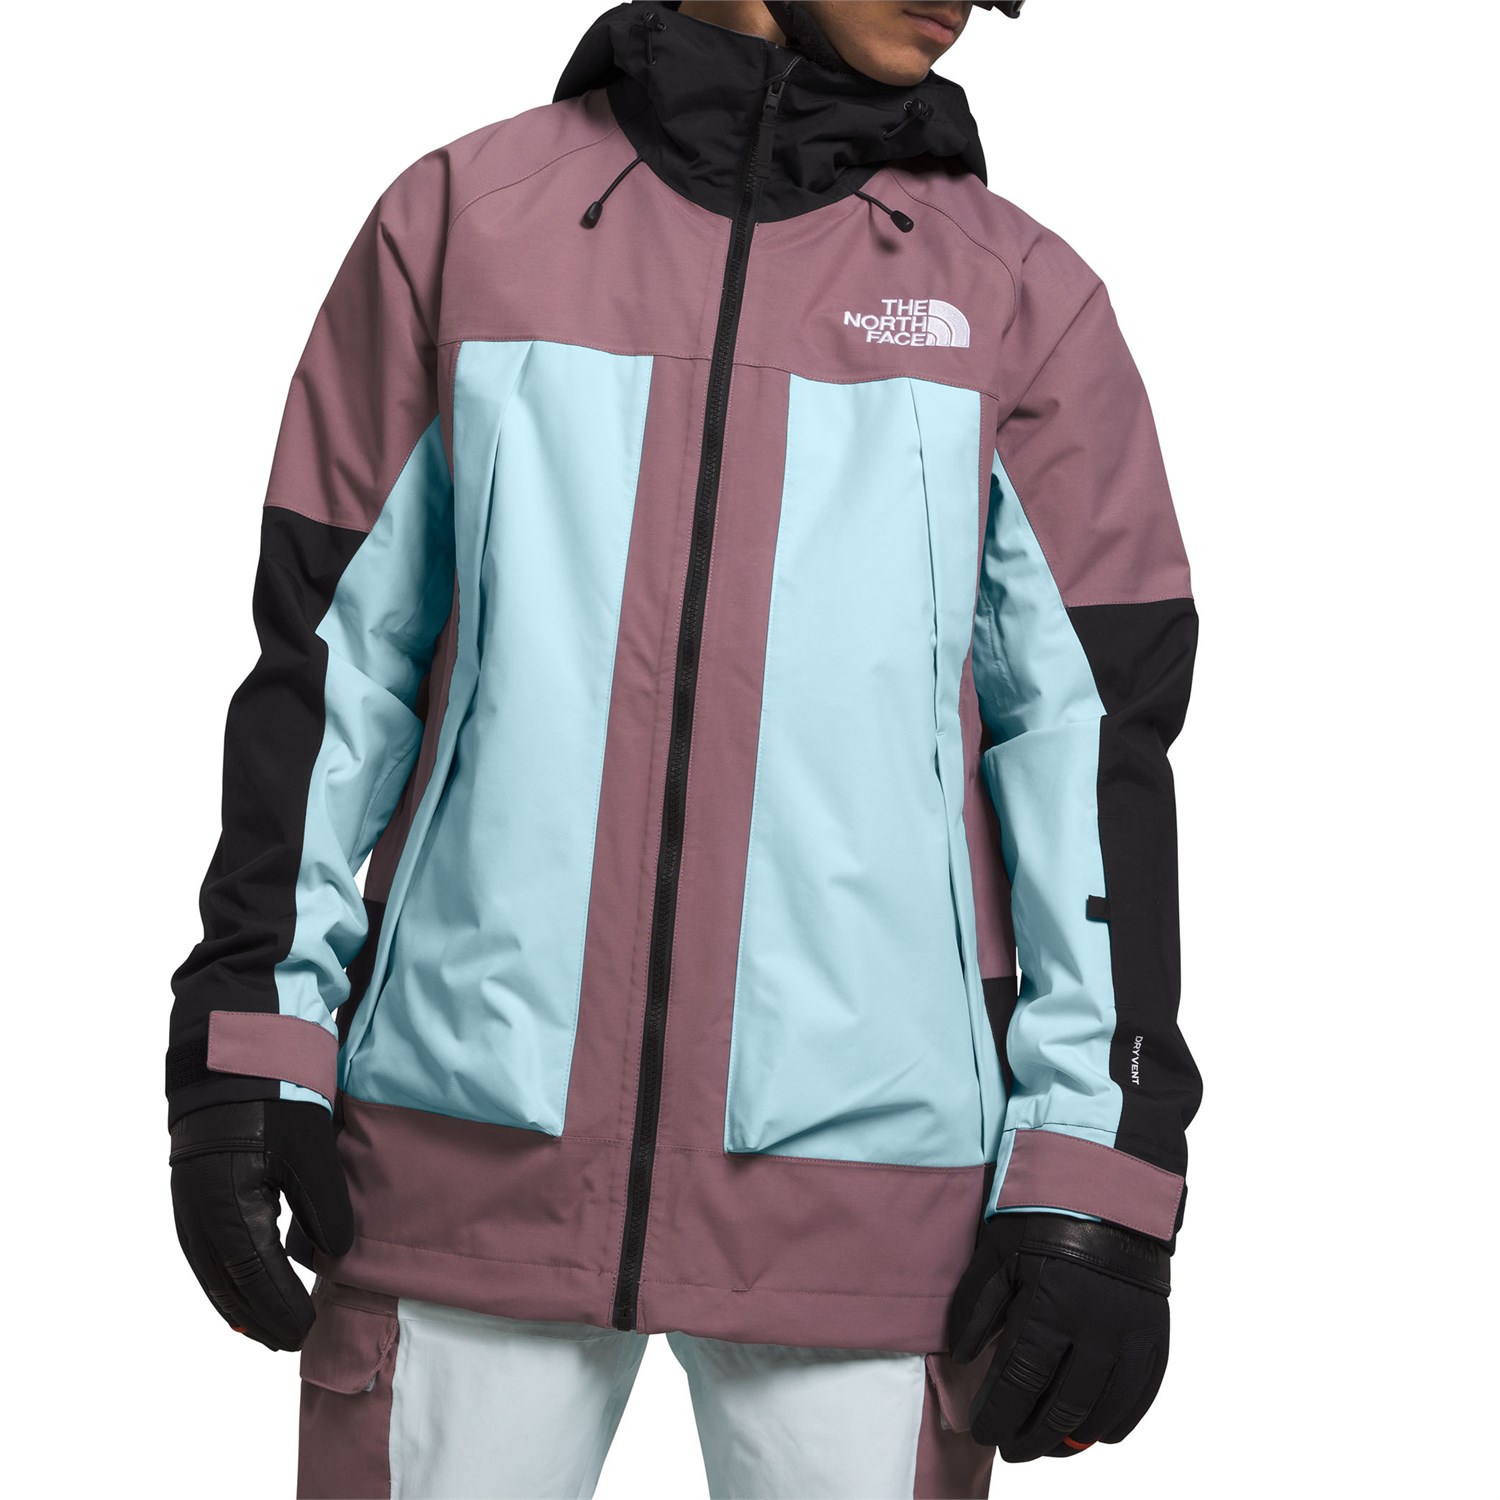 The North Face Balfron Ski/Snowboard Jacket